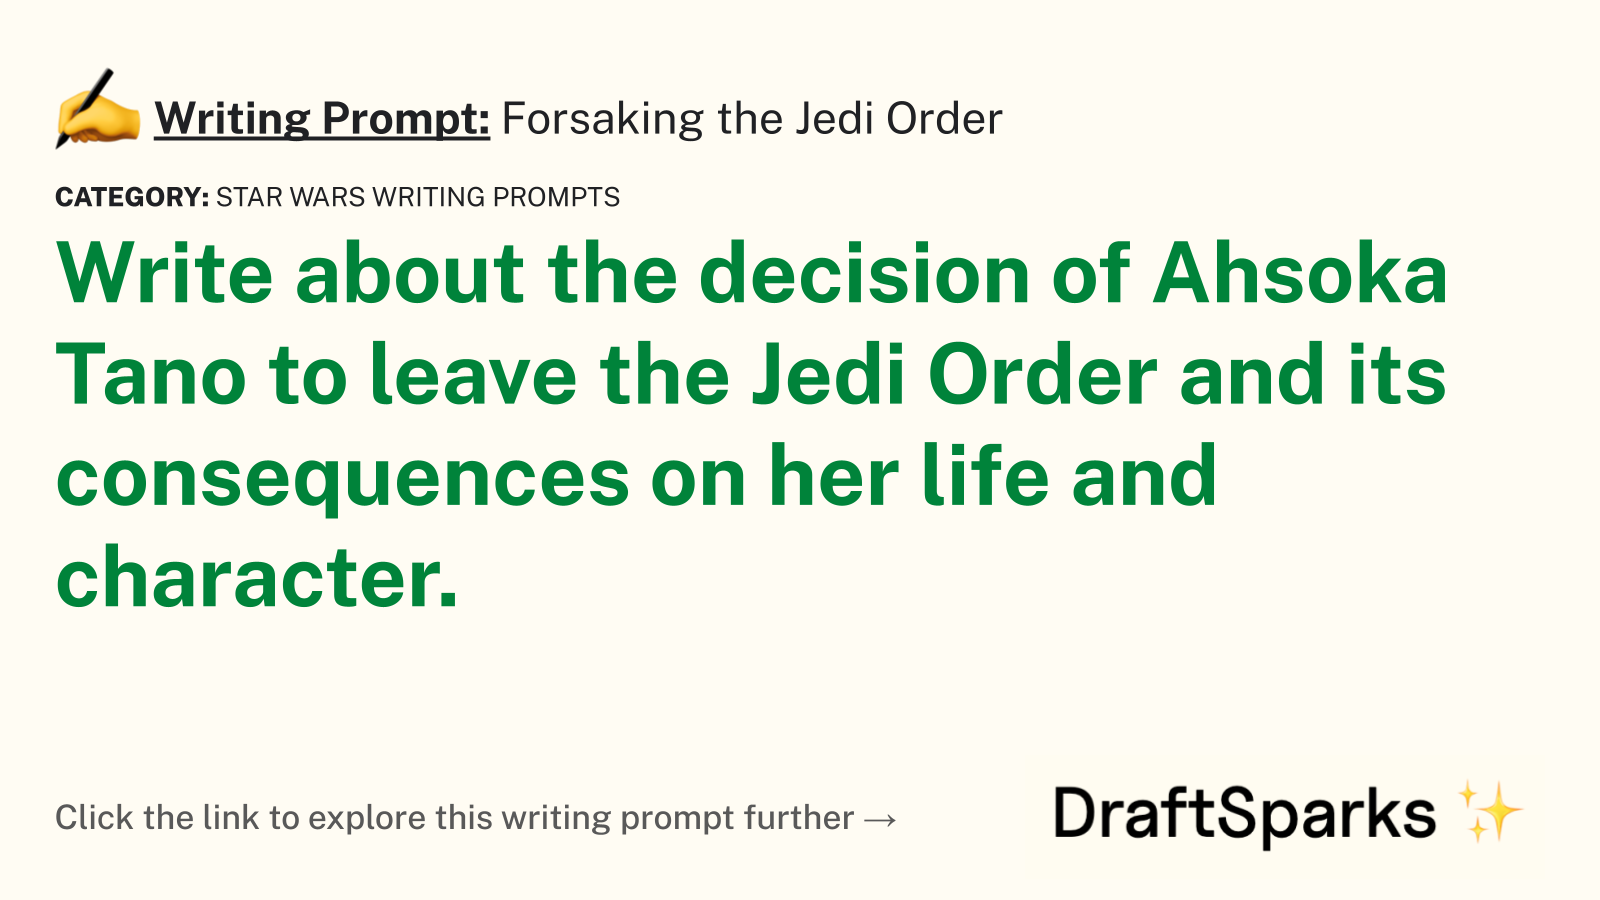 Forsaking the Jedi Order